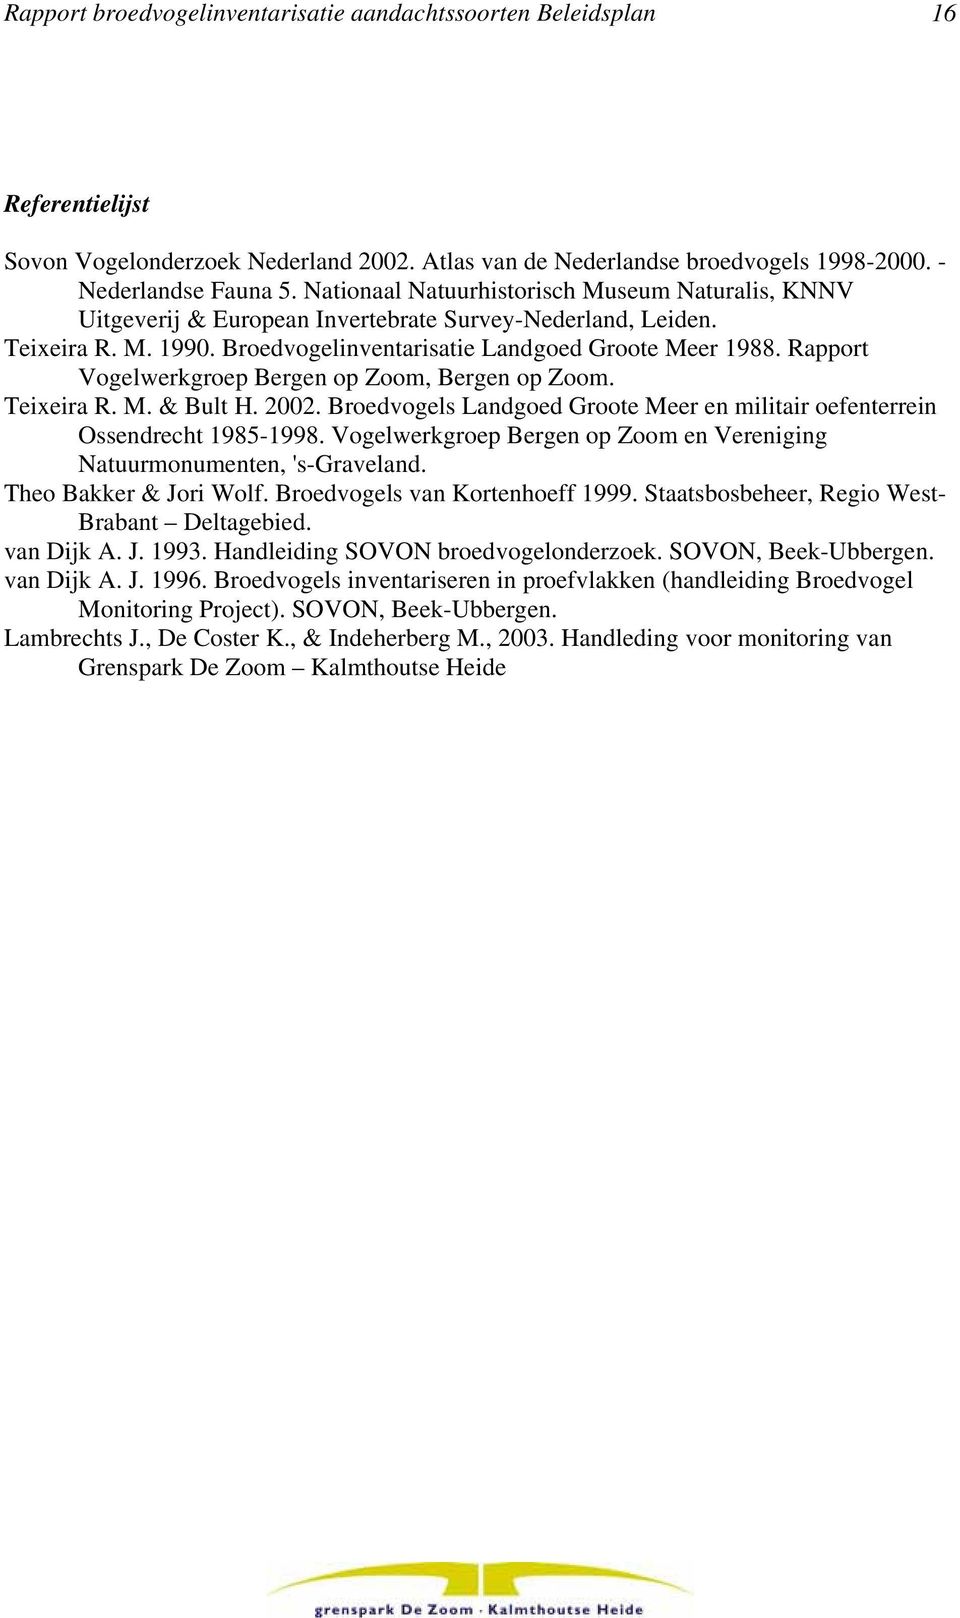 Rapport Vogelwerkgroep Bergen op Zoom, Bergen op Zoom. Teixeira R. M. & Bult H. 2002. Broedvogels Landgoed Groote Meer en militair oefenterrein Ossendrecht 1985-1998.